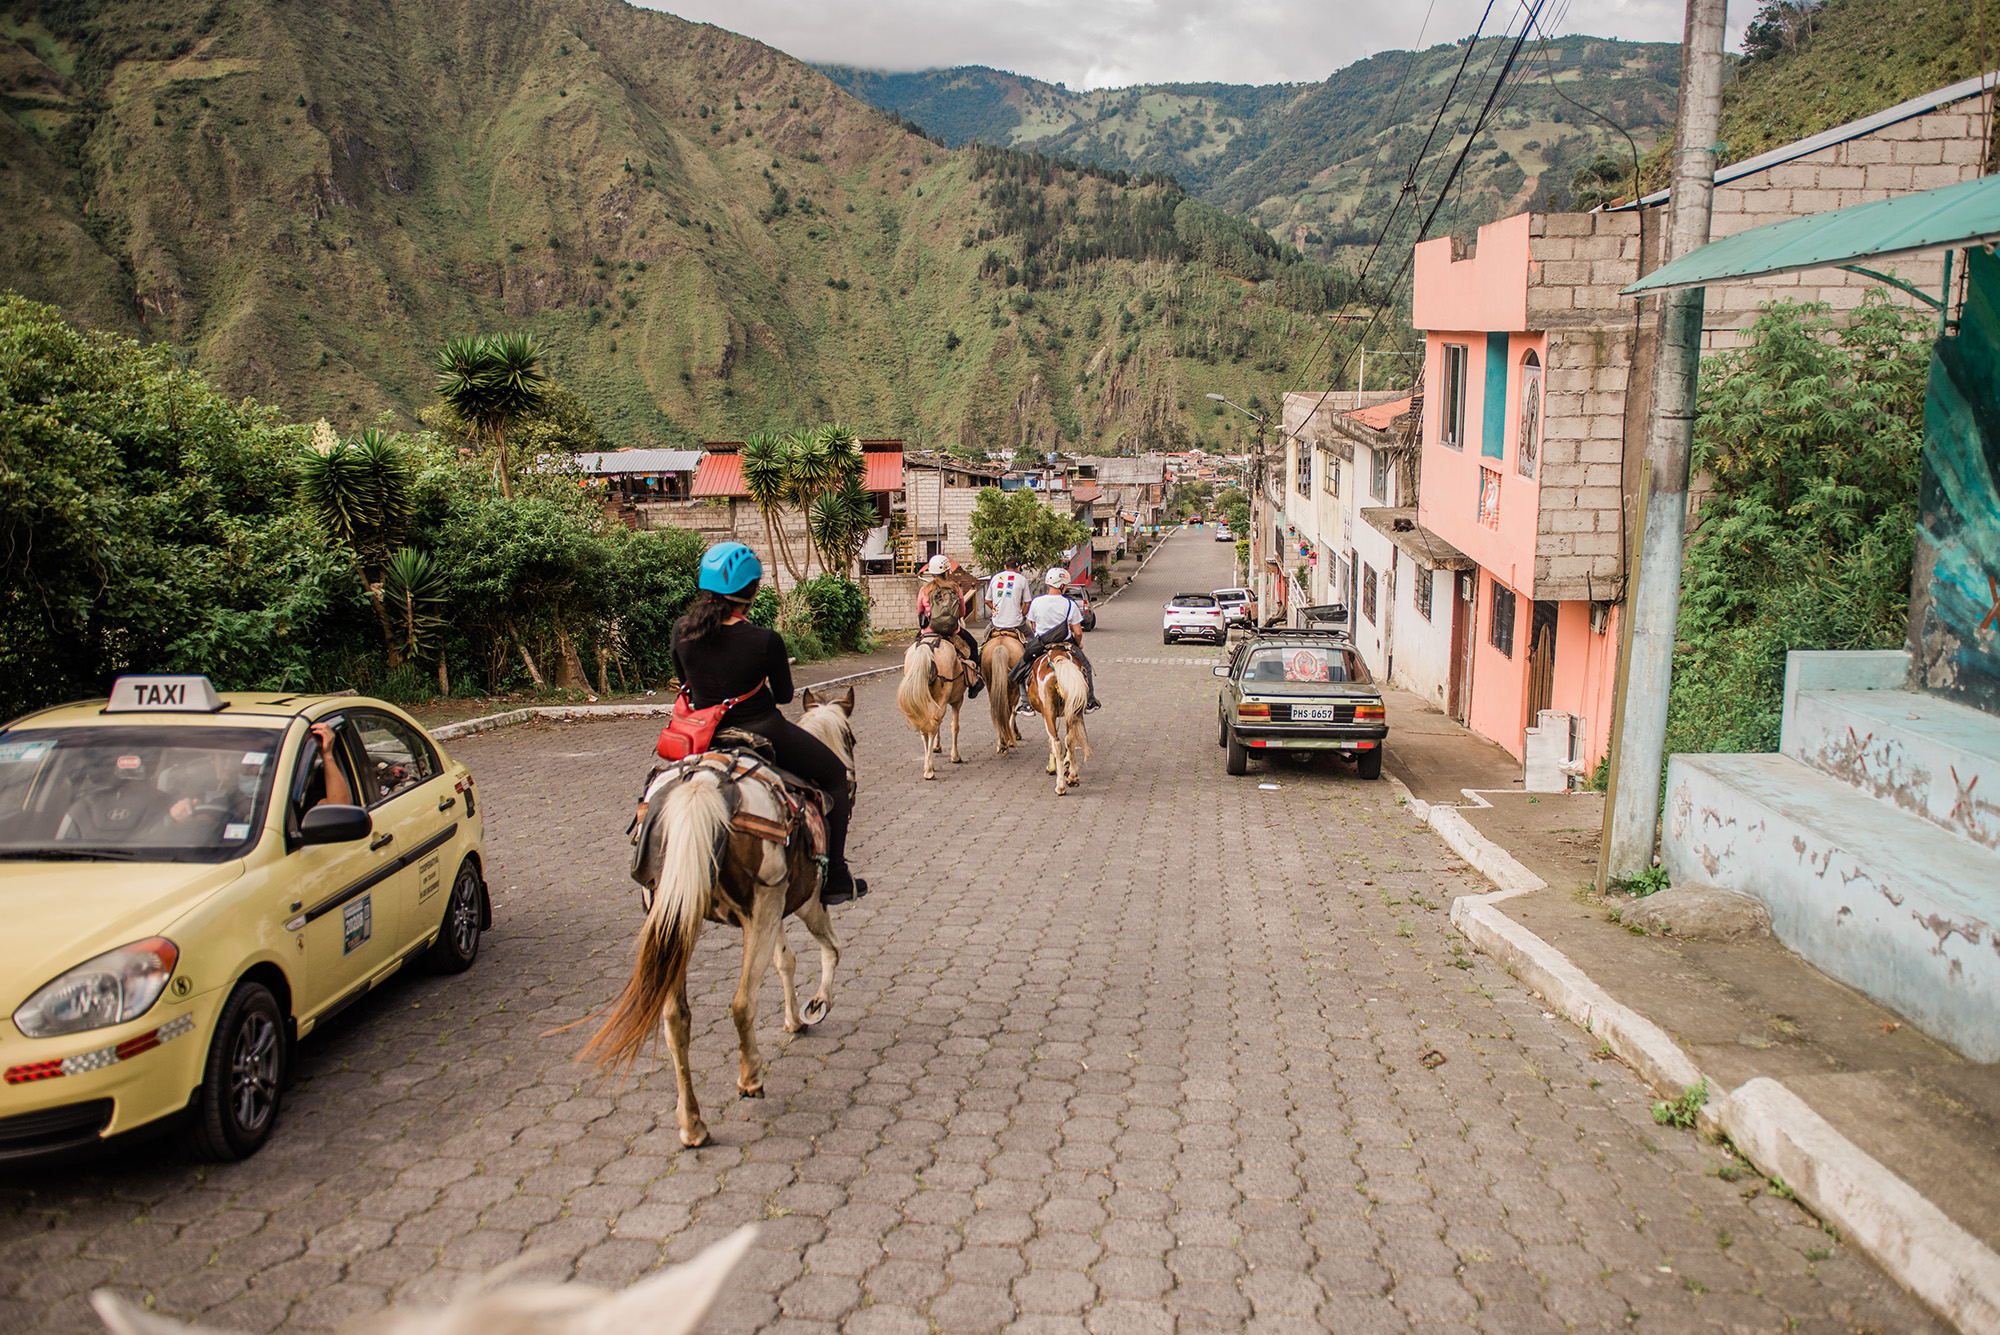 Baños, Ecuador - horseback riding